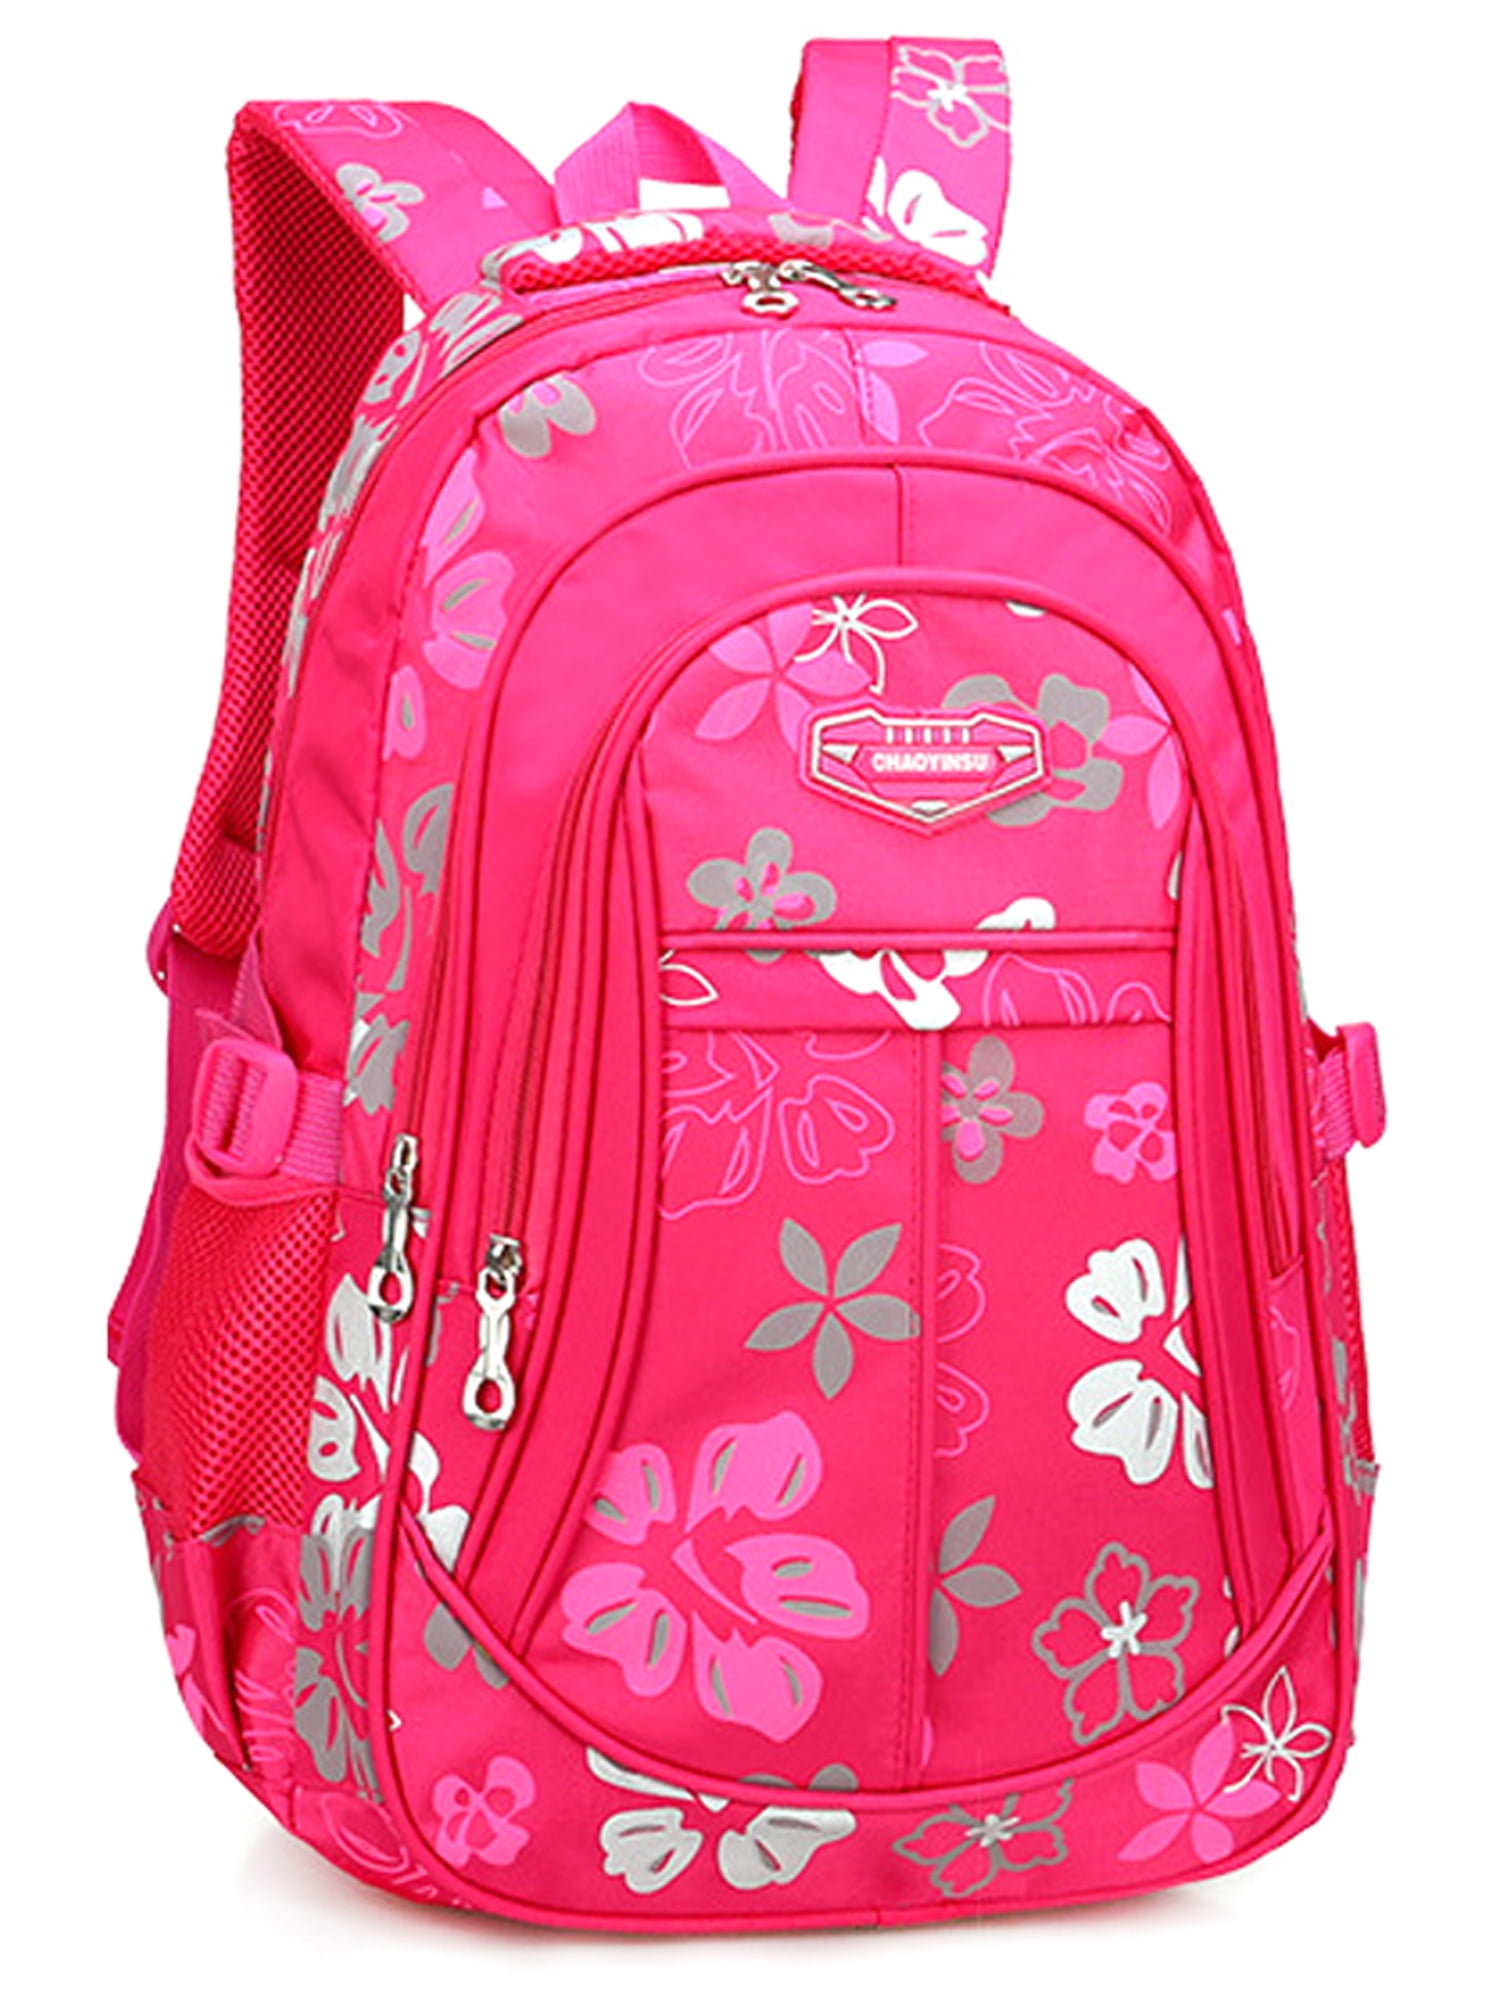 WODLLCAS - Girls Kids Backpack Rucksack Children Nylon Reduce Burden ...